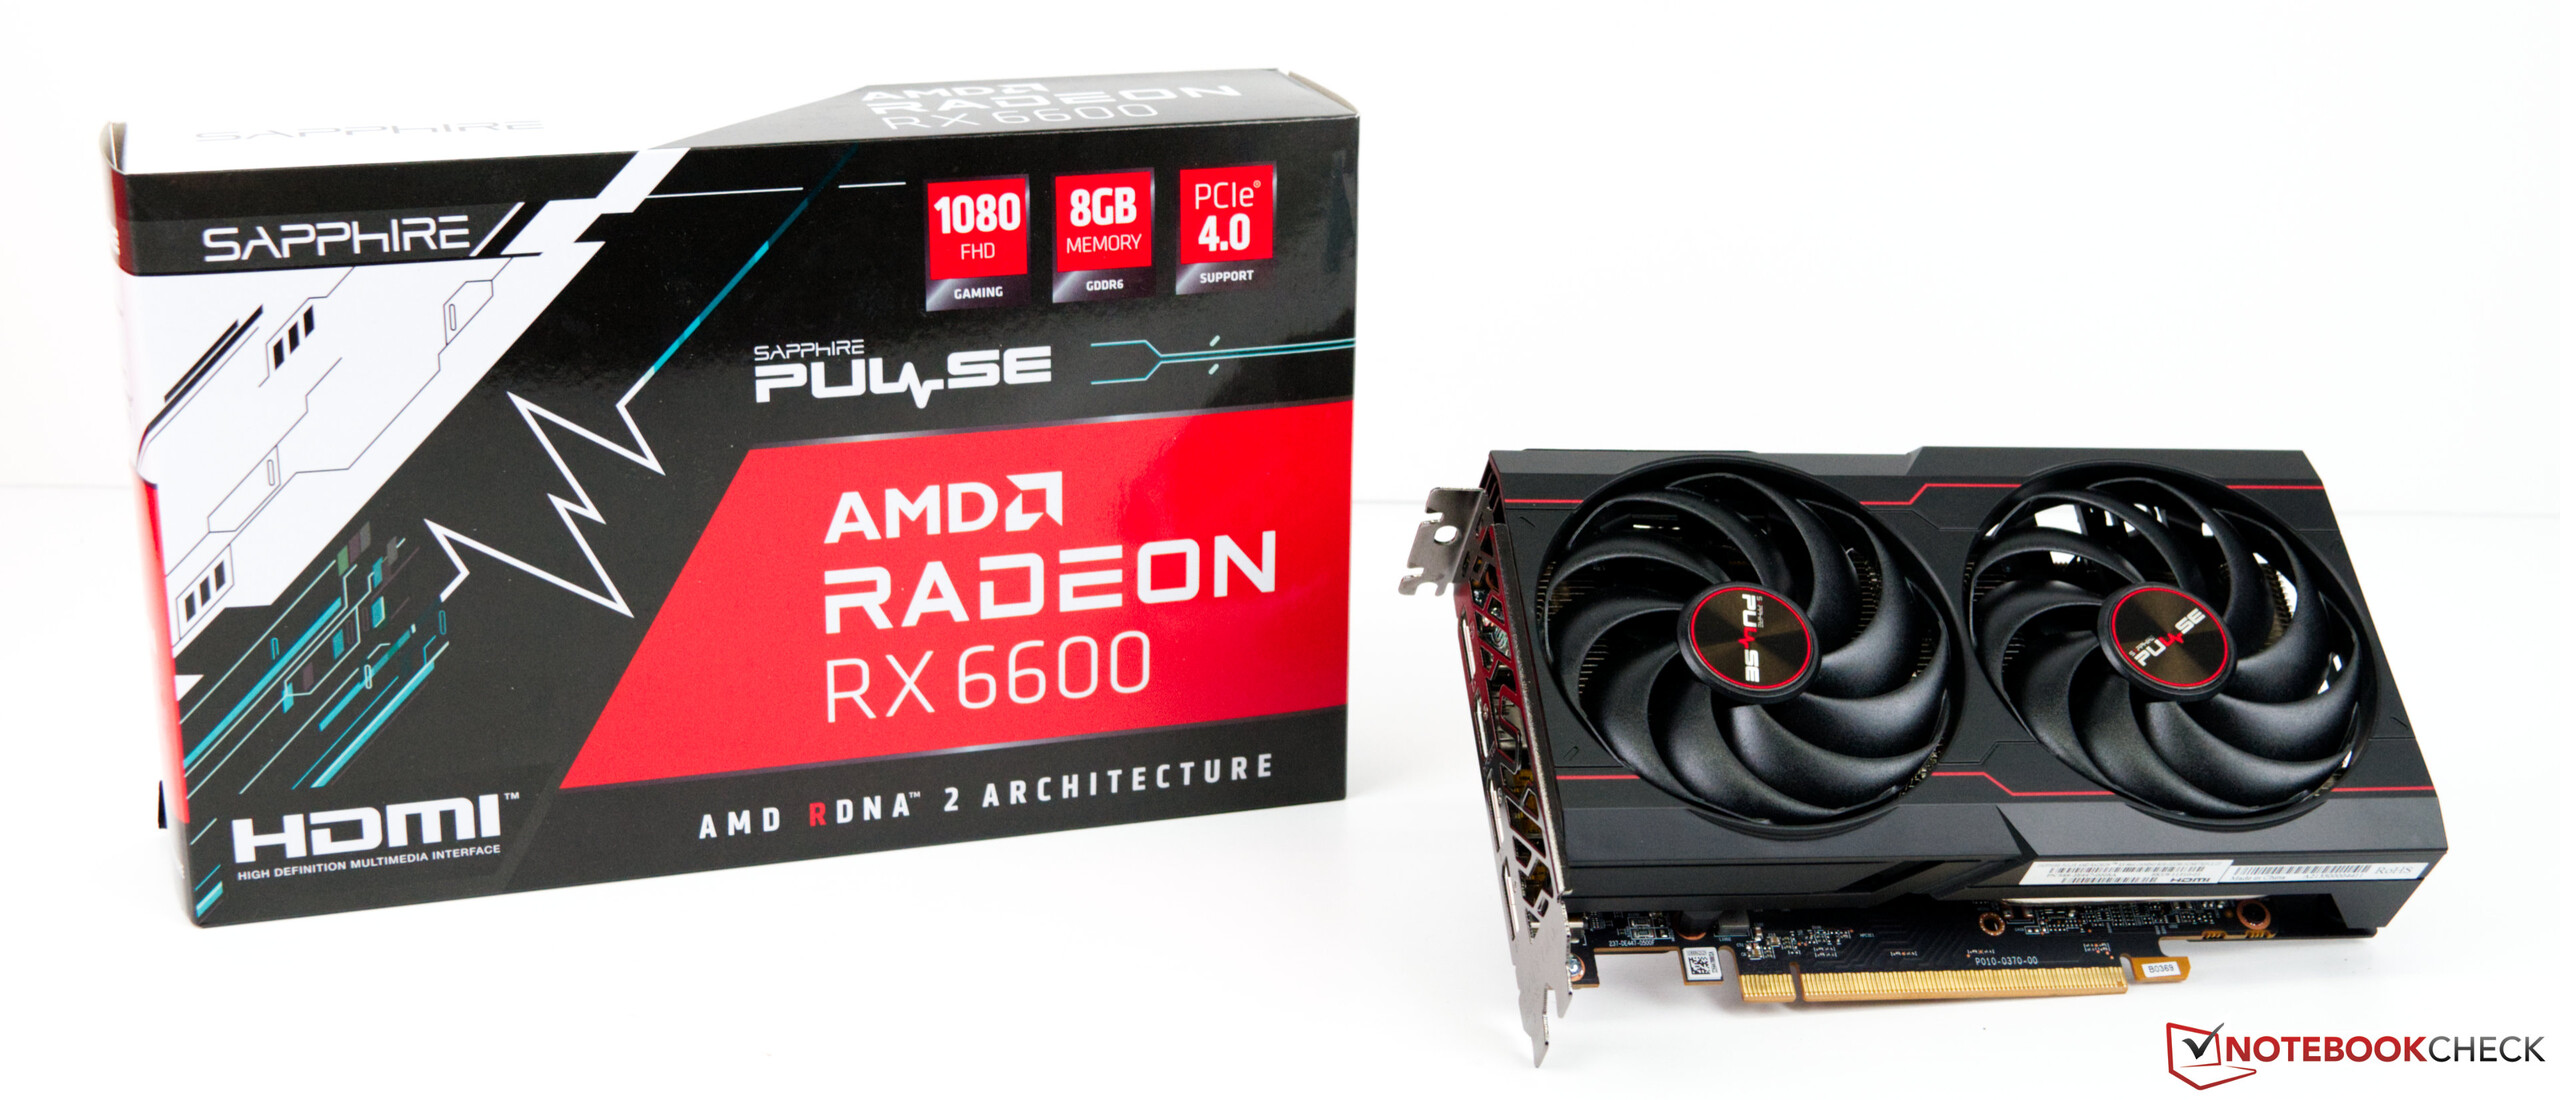 鍔 bank Onderdrukker Review of the AMD Radeon RX 6600 Mid-Range Desktop GPU - NotebookCheck.net  Reviews